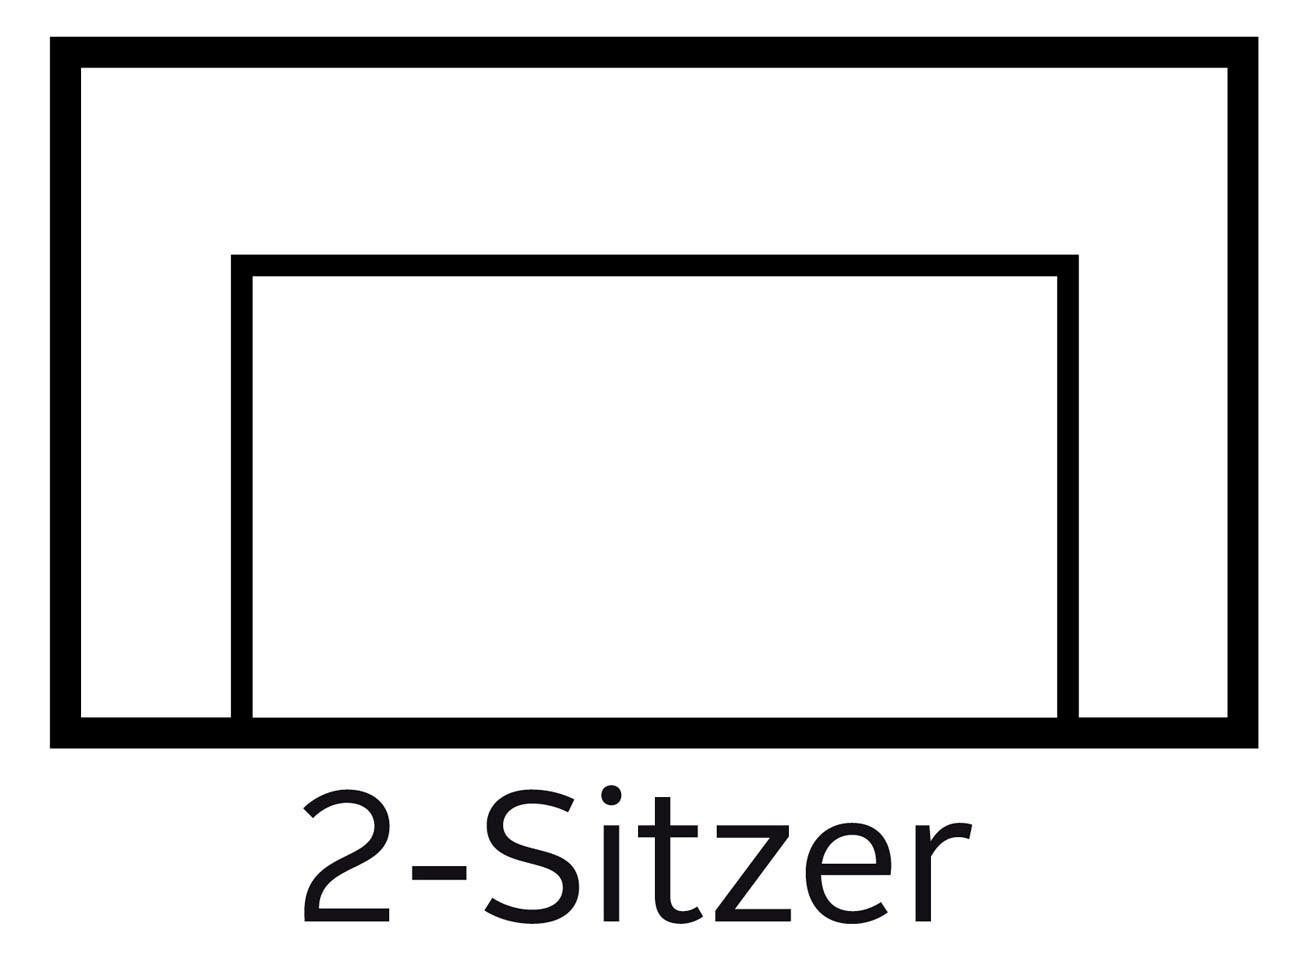 Home affaire 2-Sitzer »Palmera«, Federkern-Polsterung, Steckvorrichtung für 2 Kopfstützen (optional)